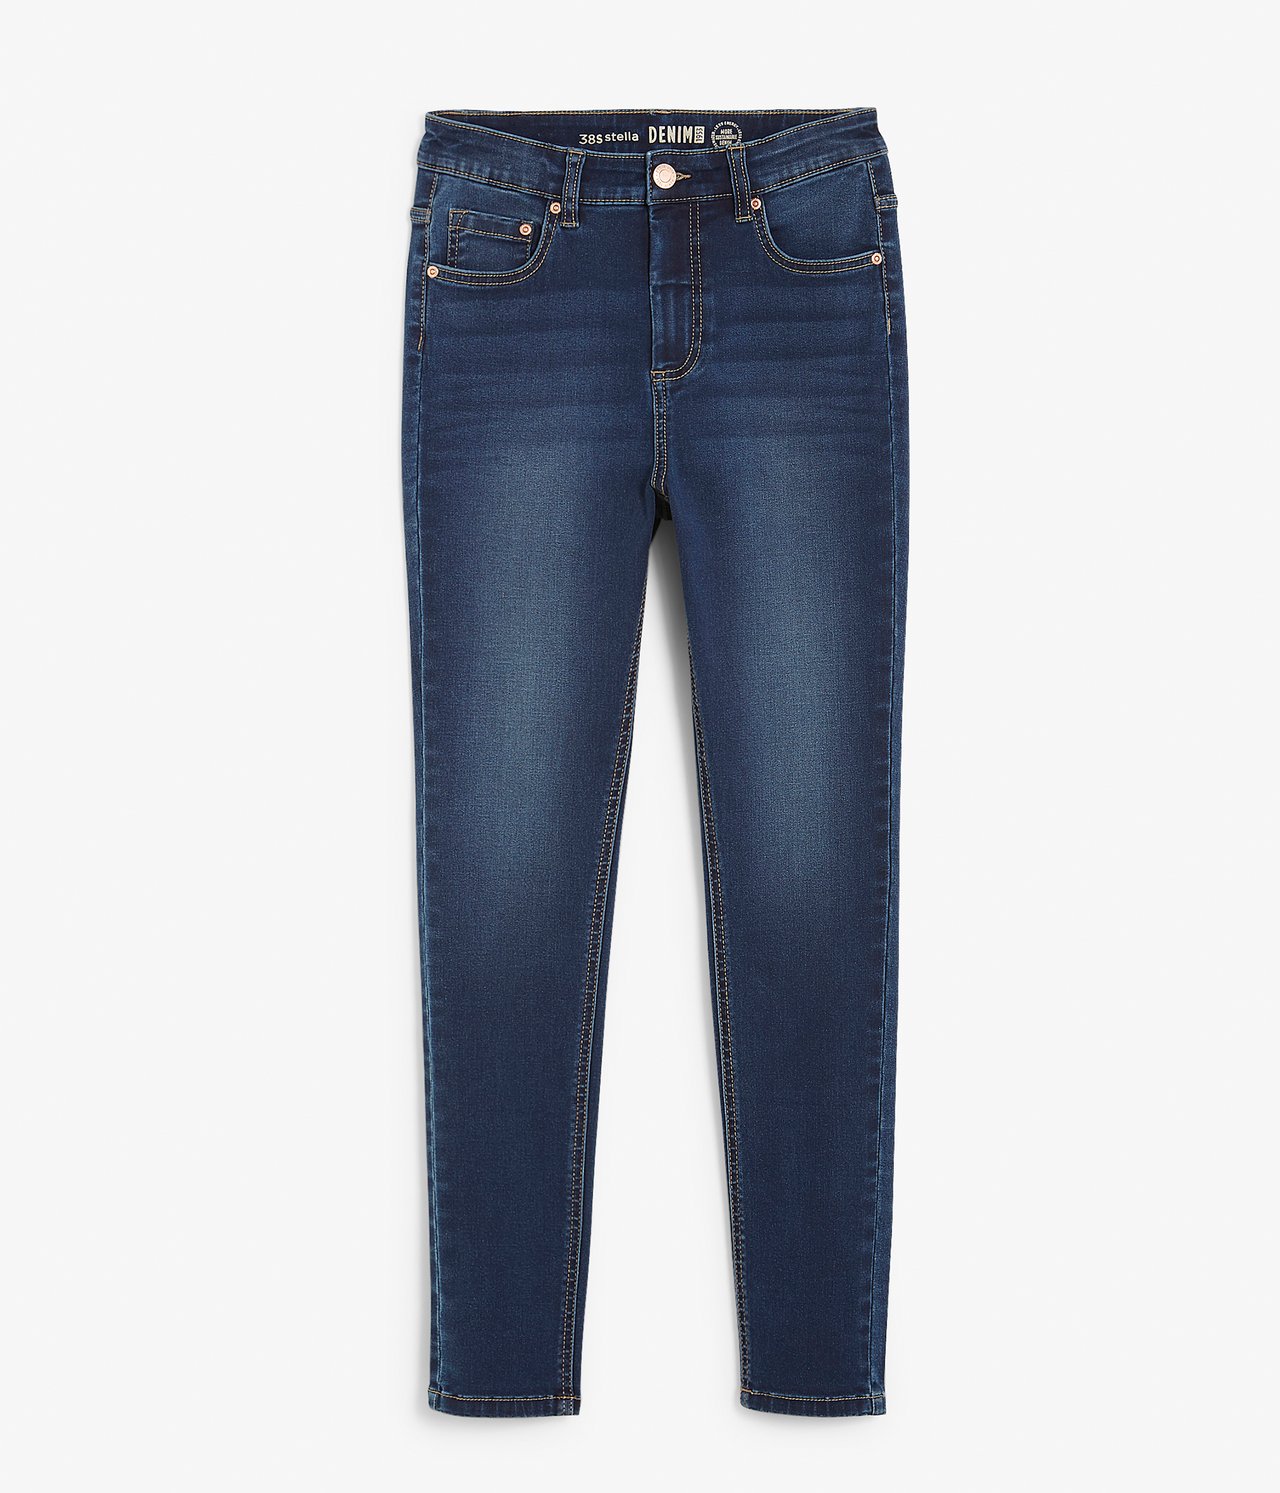 Super slim jeans short leg Mörk denim - null - 4